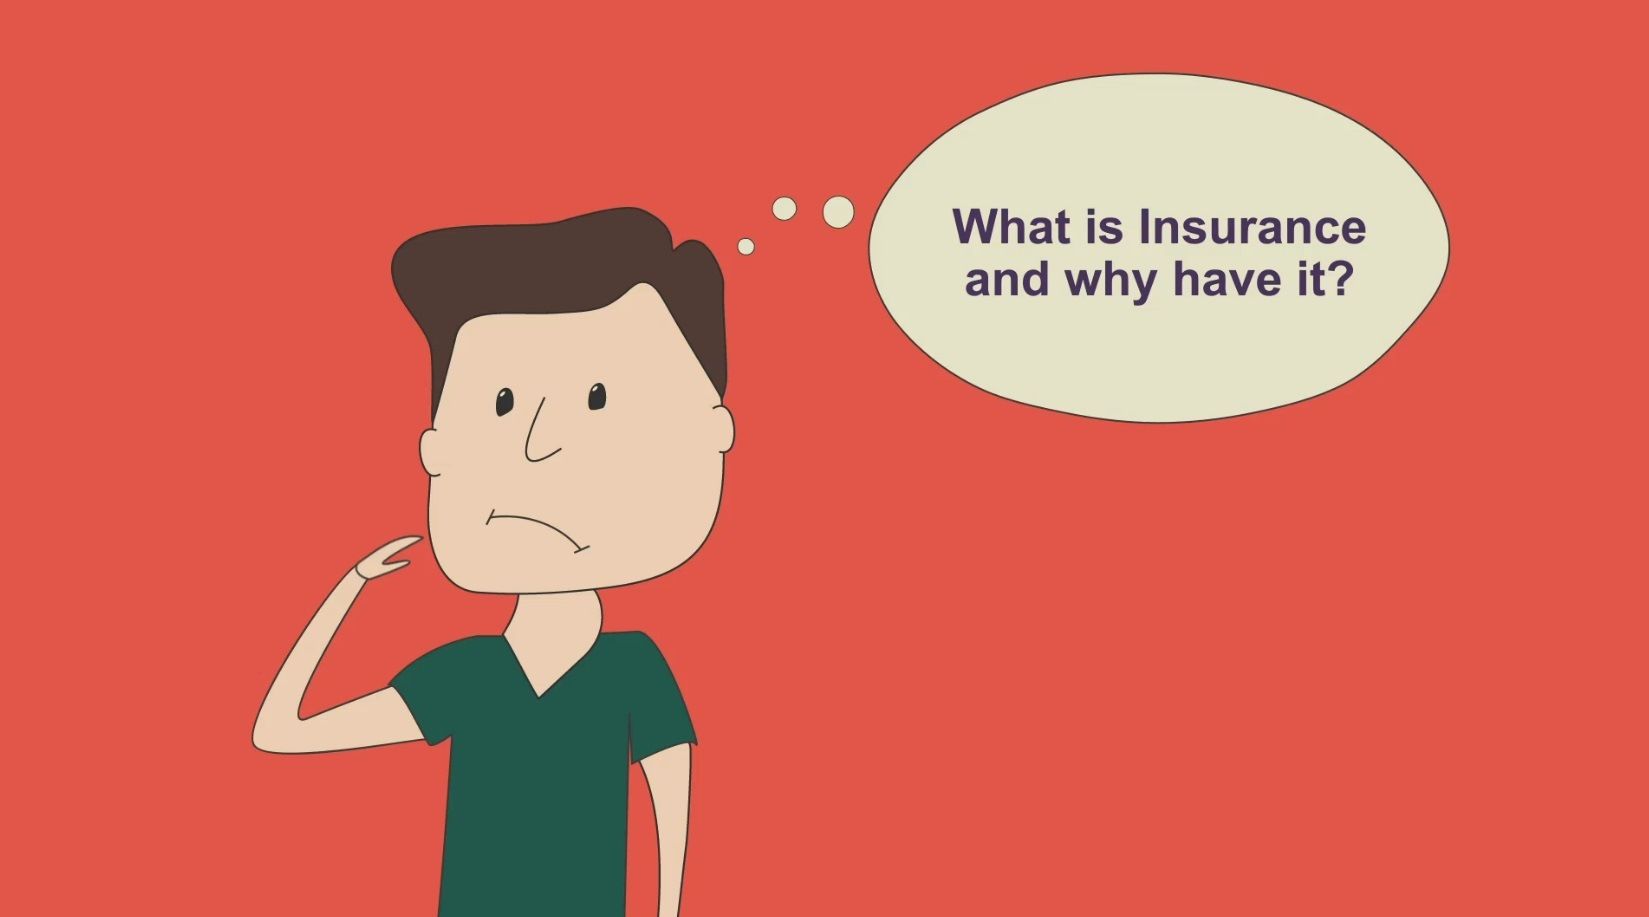 Assicurazione for dummies - Cartoon insurance